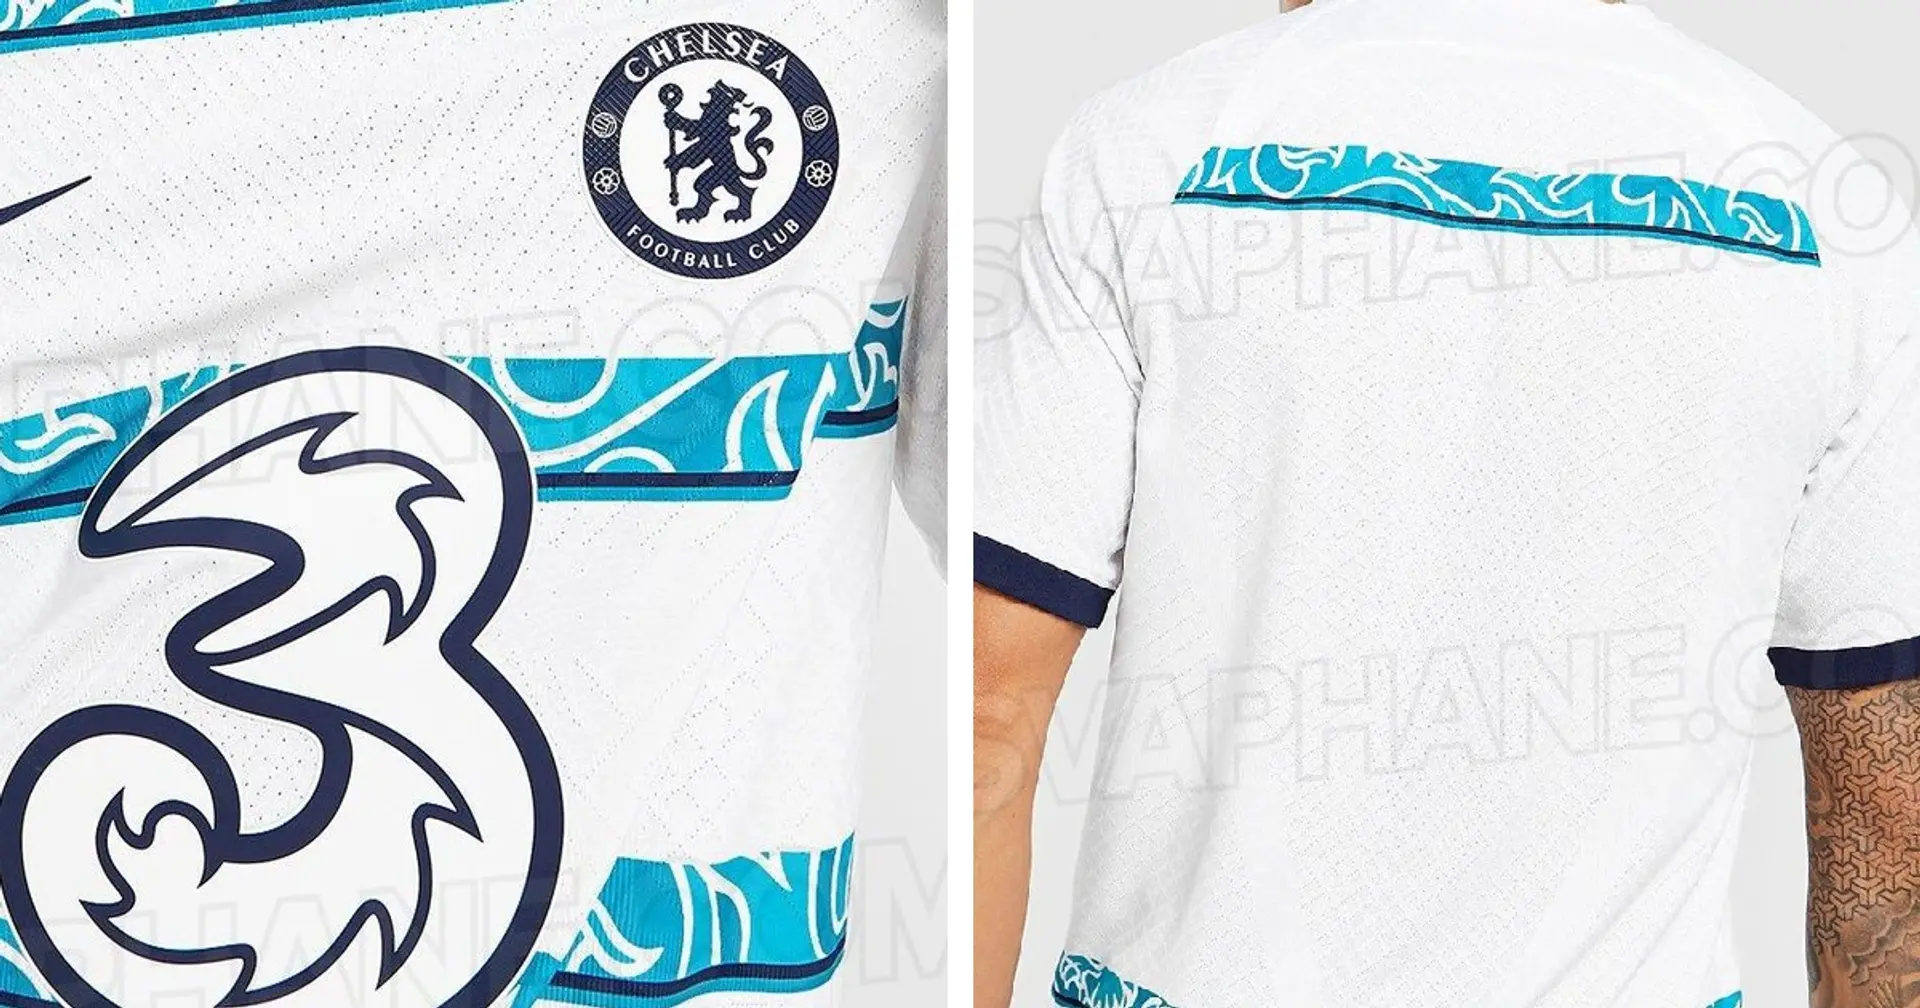 Images of Chelsea's away kit for 2022/23 season leaked